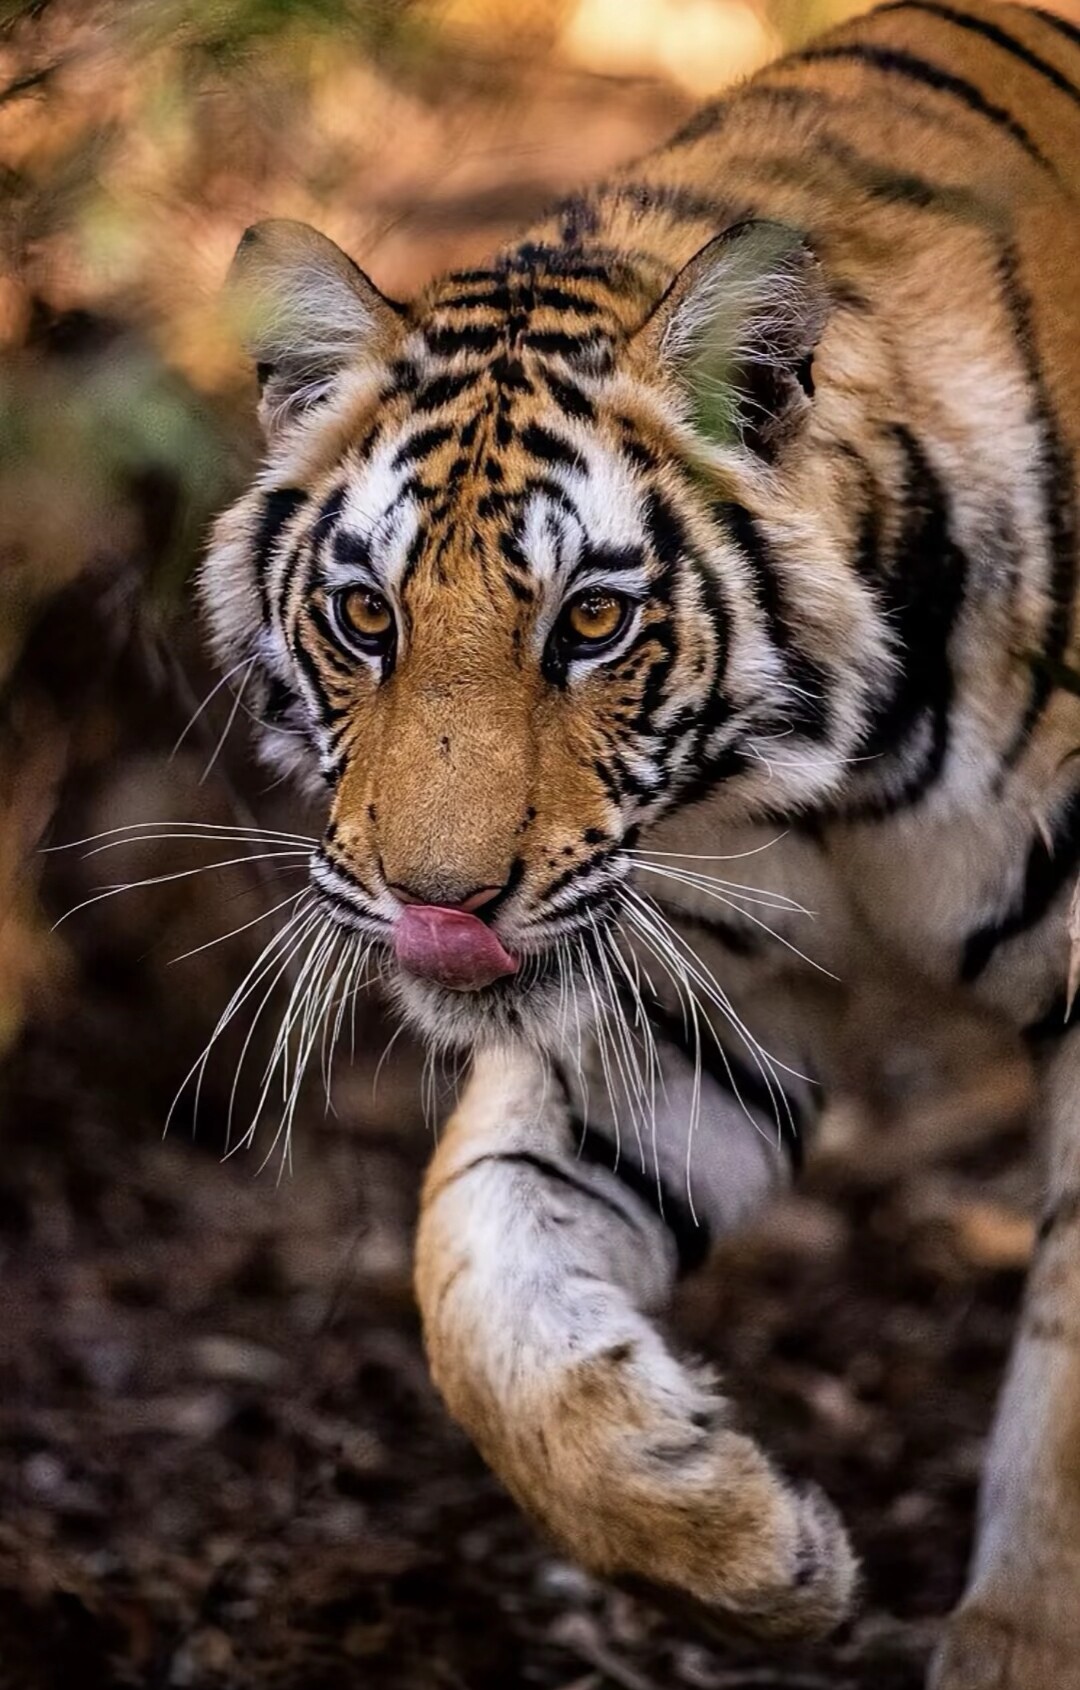 分享一组大自然的王者,凶猛霸气的老虎图集